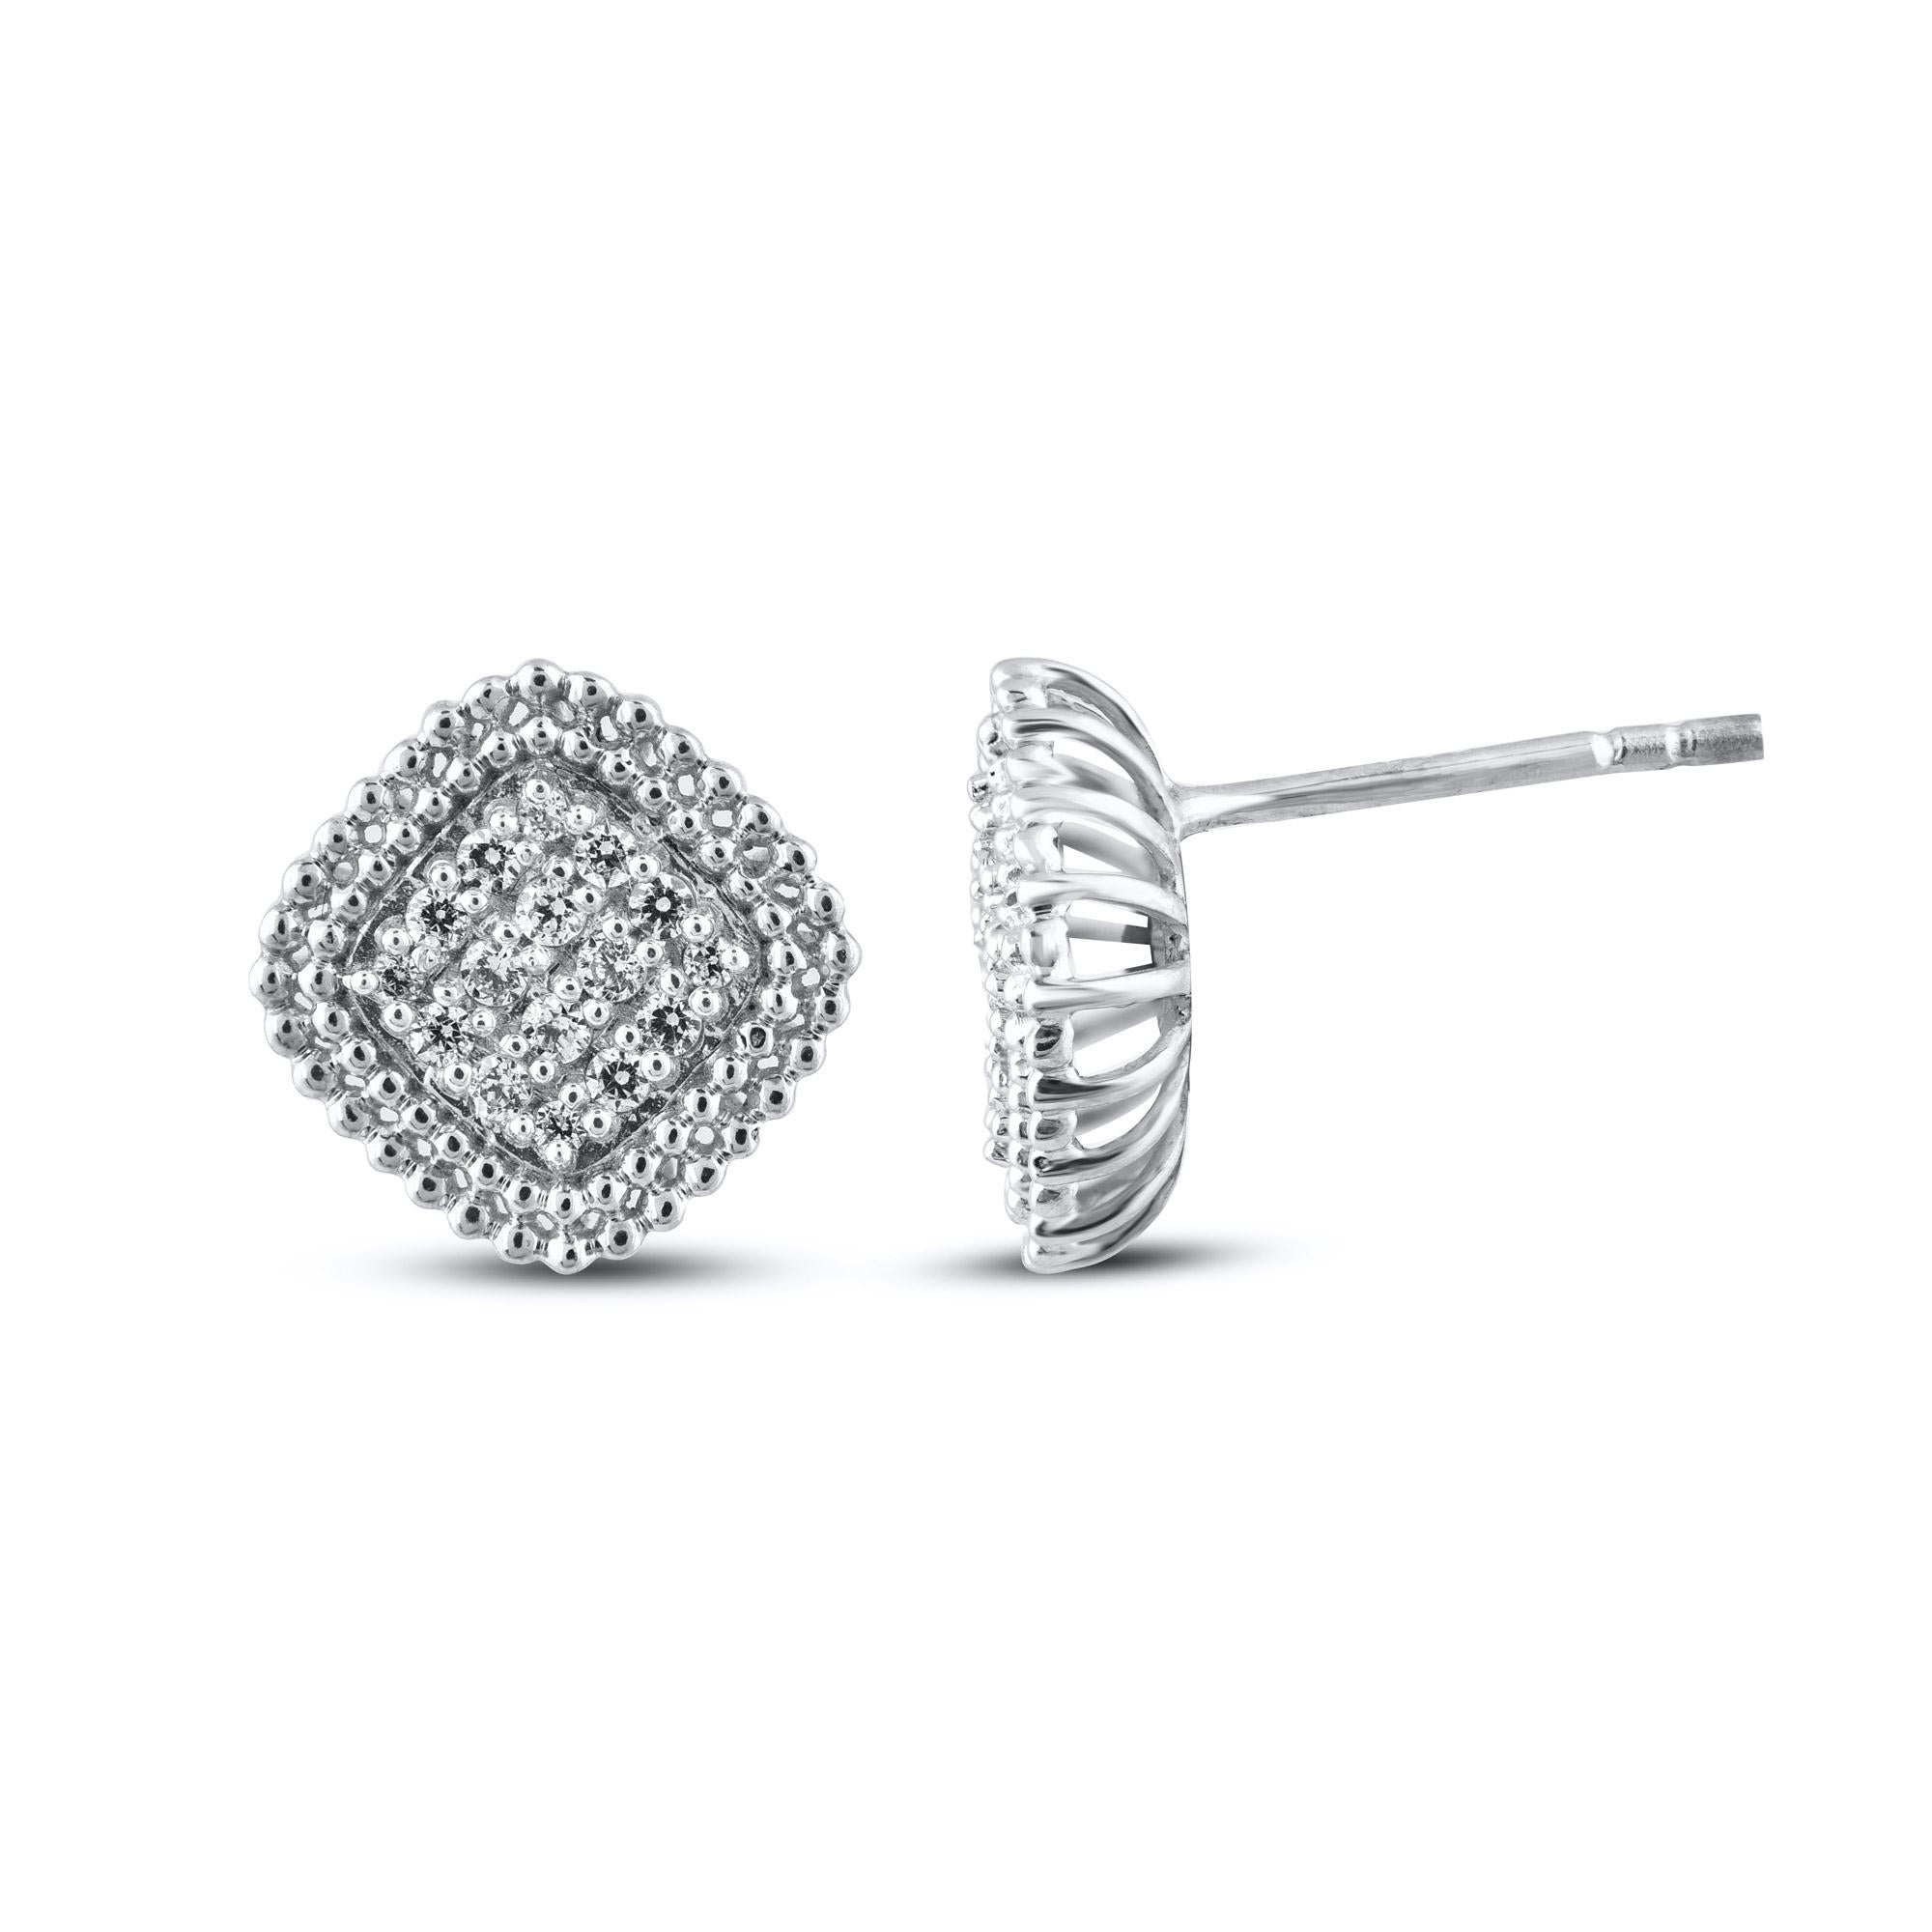 Diese zeitlosen und eleganten Diamantohrstecker lassen sich mühelos vom Tag zum Abend tragen. Dieser Ohrring ist wunderschön gestaltet und mit 32 Diamanten im Einzel- und Brillantschliff in Zackenfassung besetzt. Das Gesamtgewicht der Diamanten